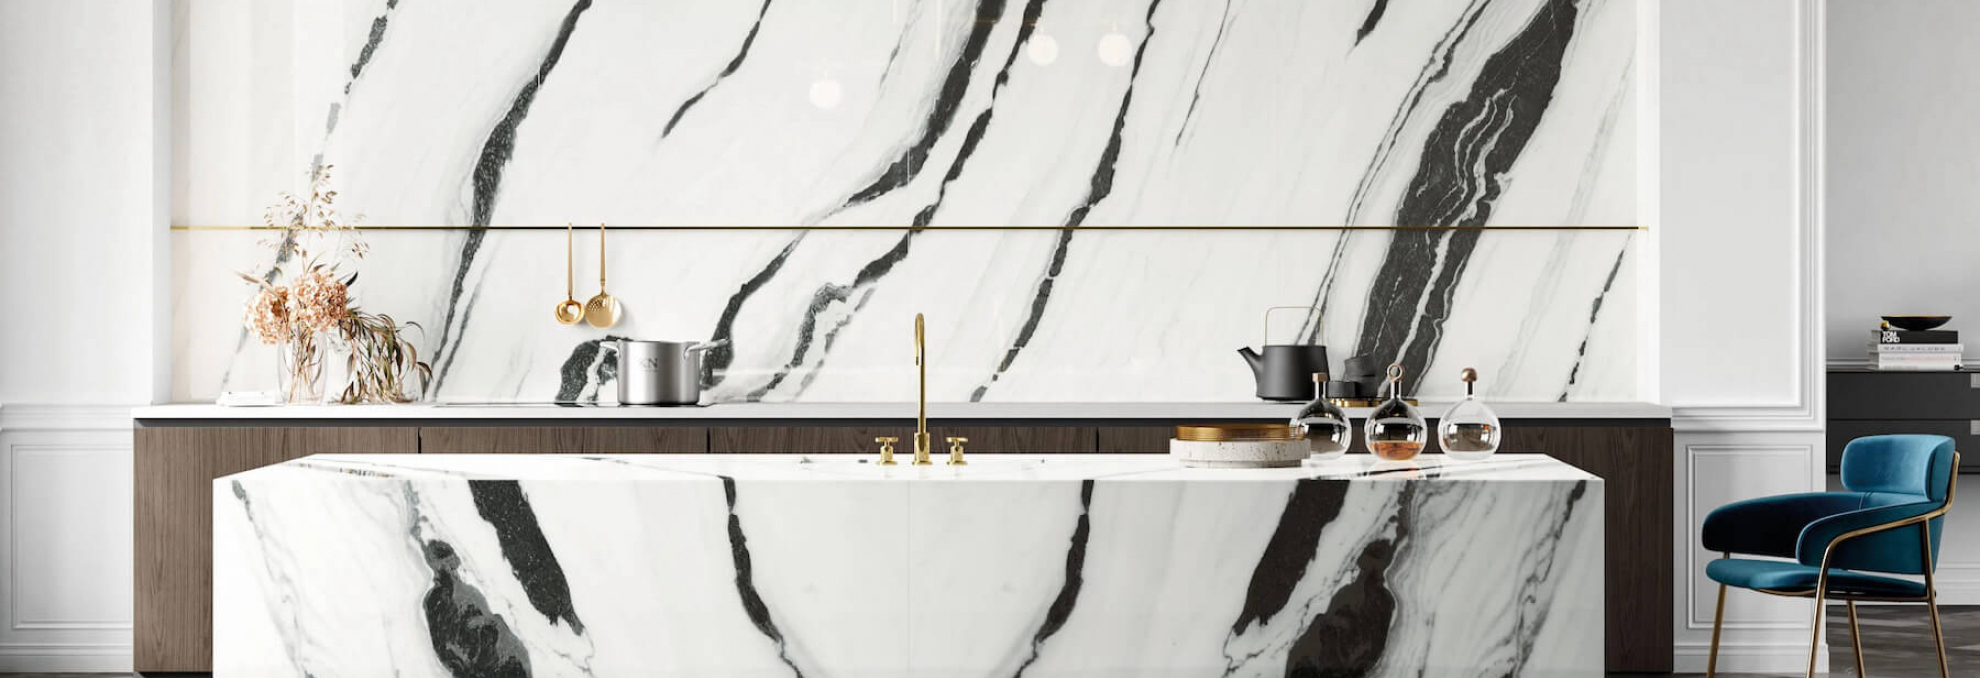 Kuchyně a koupelna v designu bílého mramoru Lux Experience